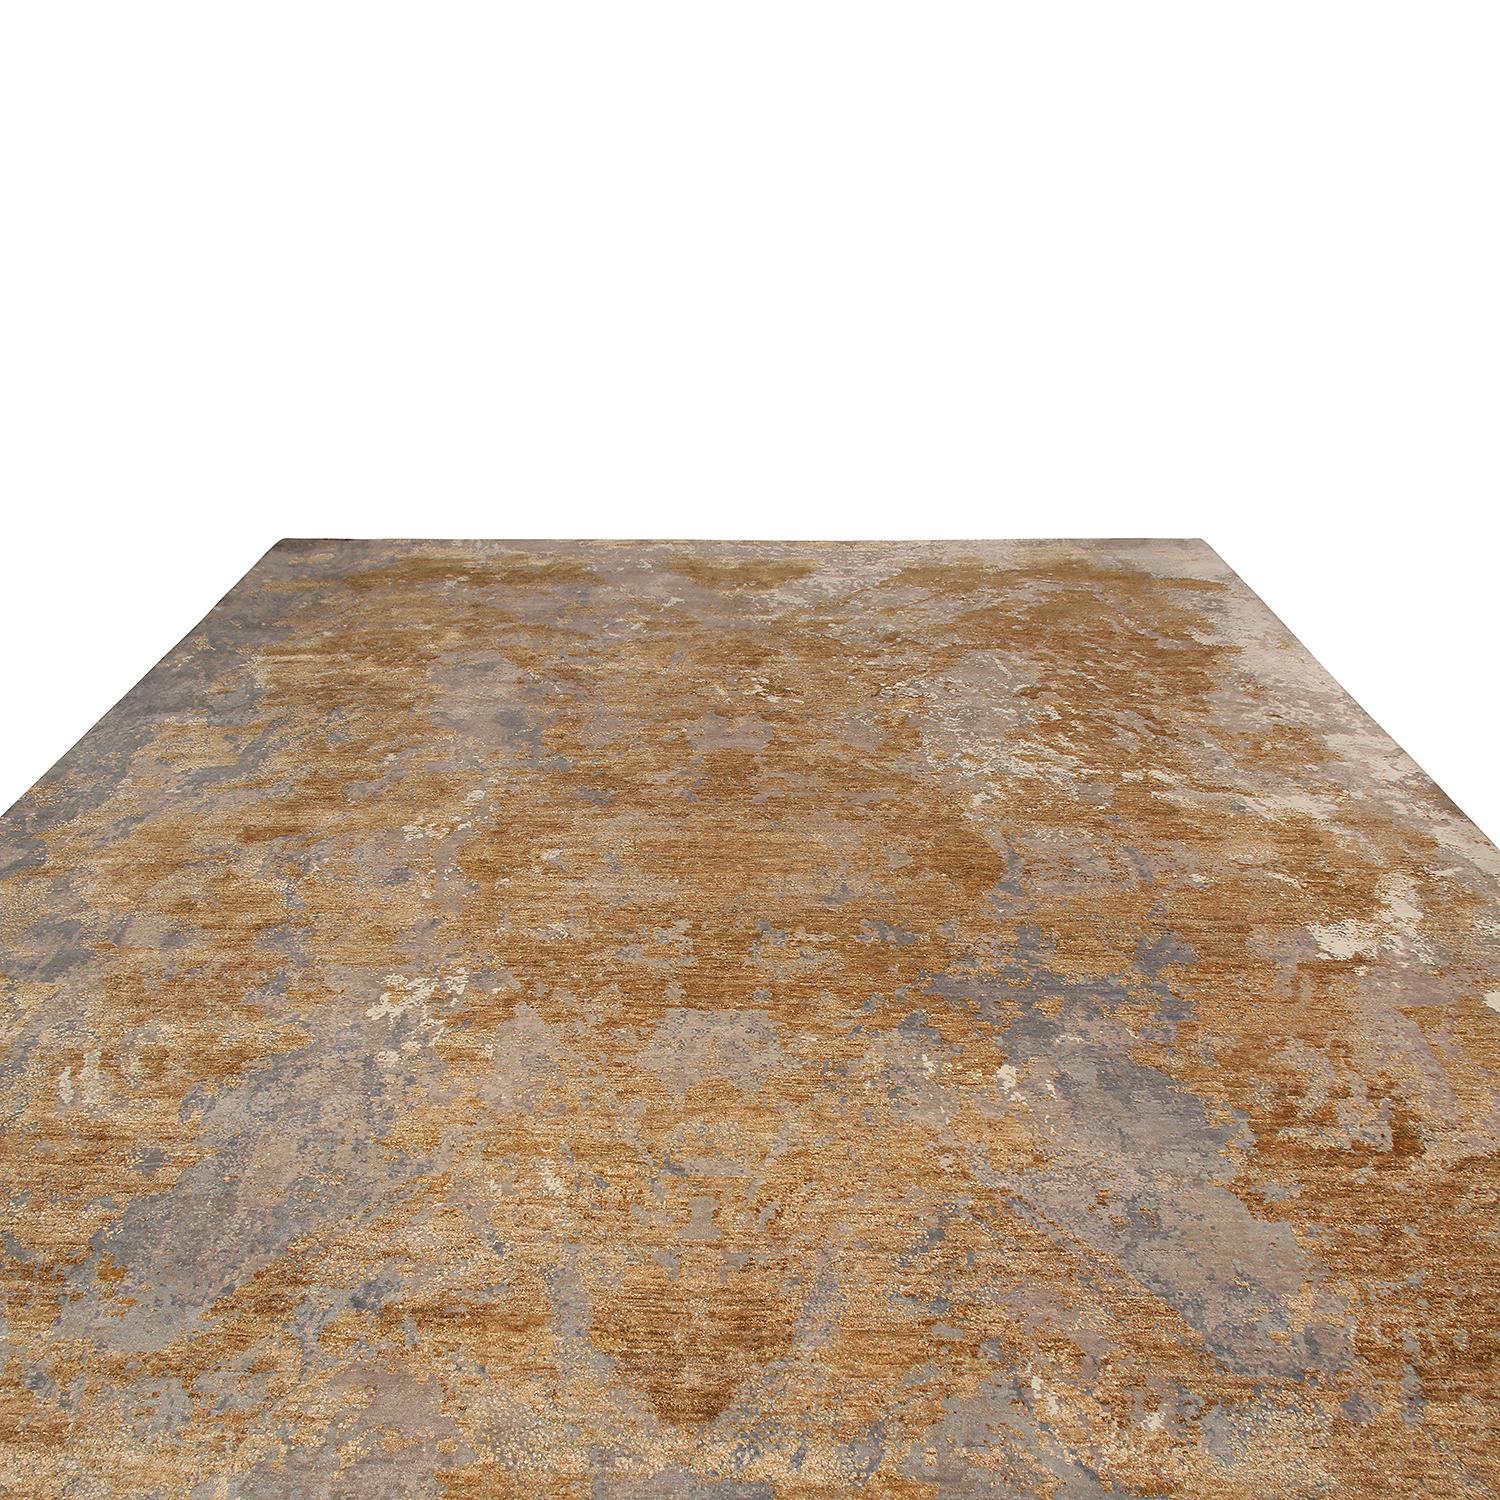 Dieser aus Indien stammende, handgeknüpfte Teppich aus der Modern Collection'S von Rug & Kilim verbindet moderne Farben und Texturen mit einem klassischen, traditionellen Sinn für Symmetrie im Felddesign. Die mehrfarbigen Beige-, Gold- und Grautöne